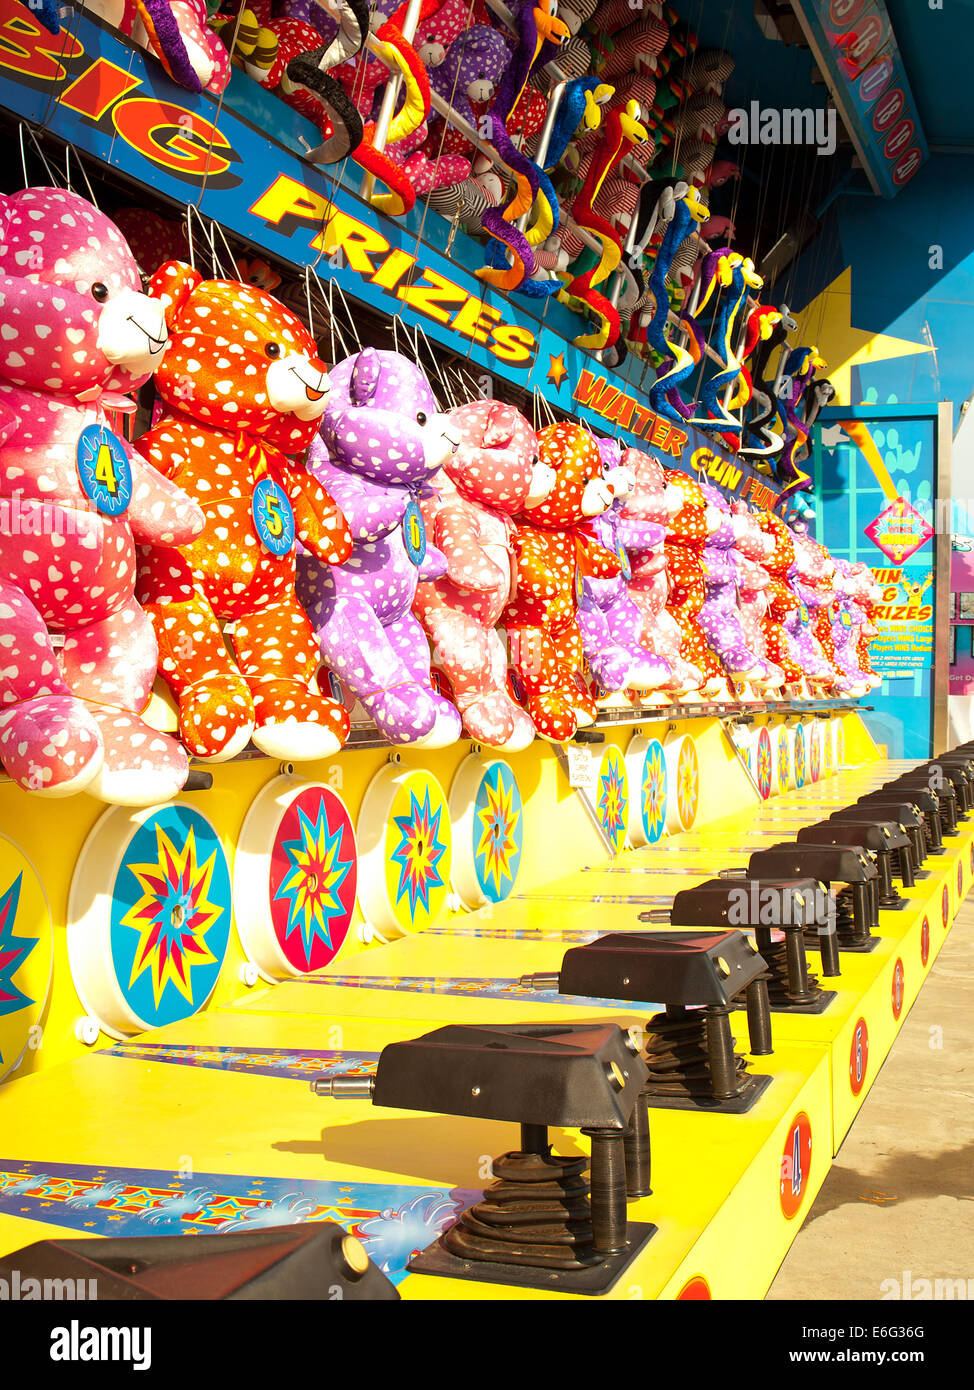 carnival game Stock Photo